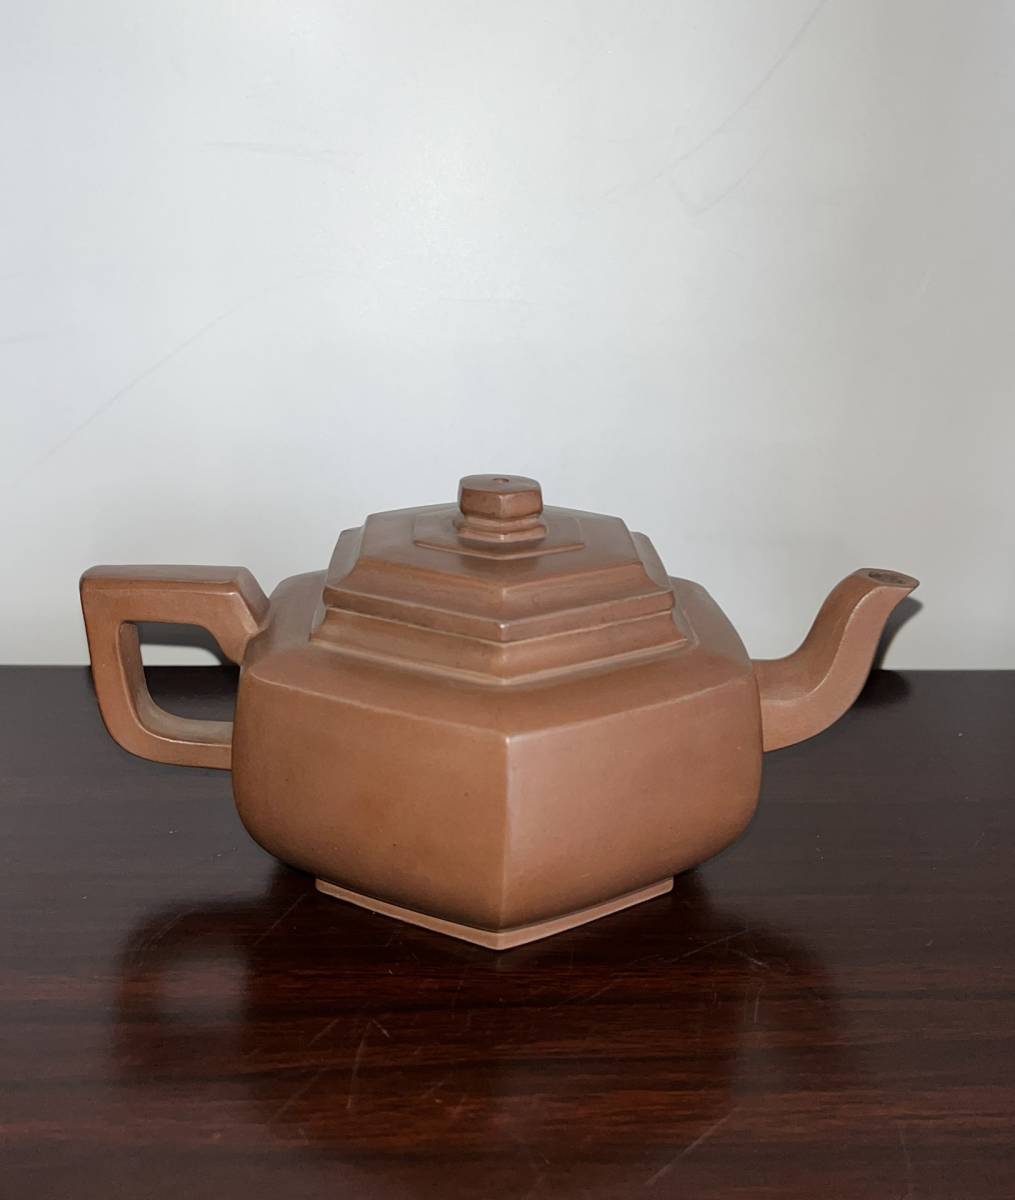 ZA0000133 中国唐物秘蔵逸品紫砂壺茶道具高11 直径19.5 口径7.5 底径6cm-